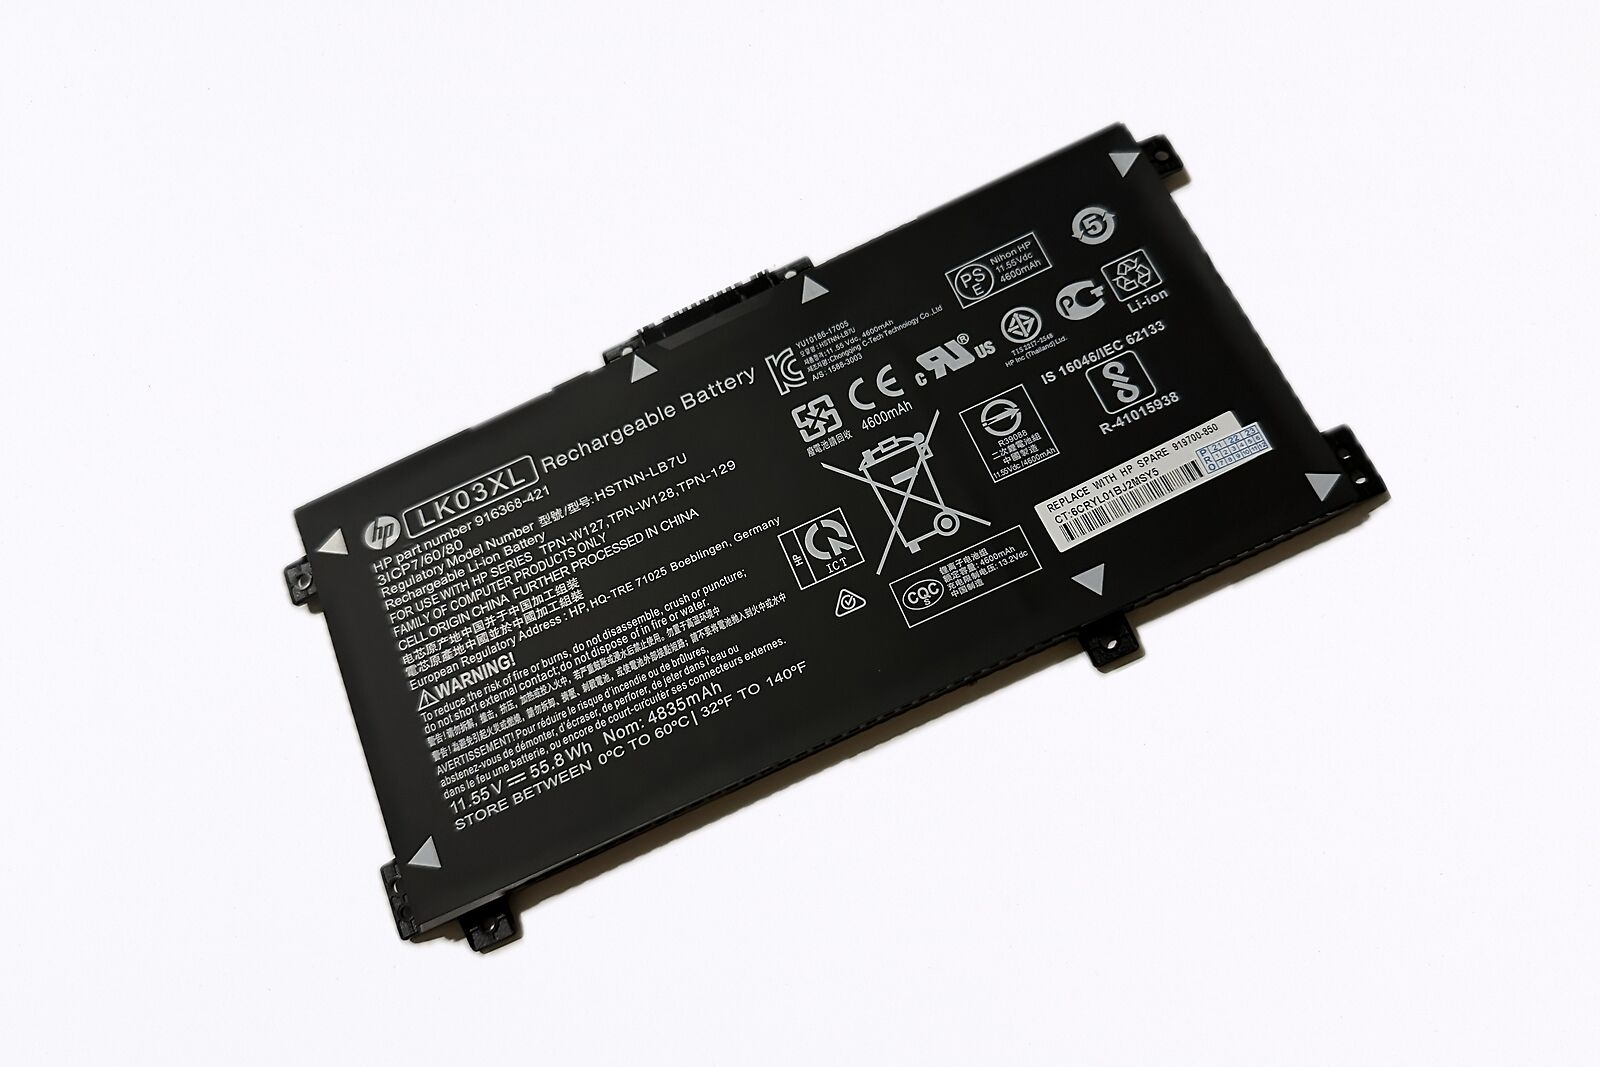 Genuine HP ENVY 17M-BW 17m-bw0013dx Laptop Battery LK03XL L09281-855 Silver